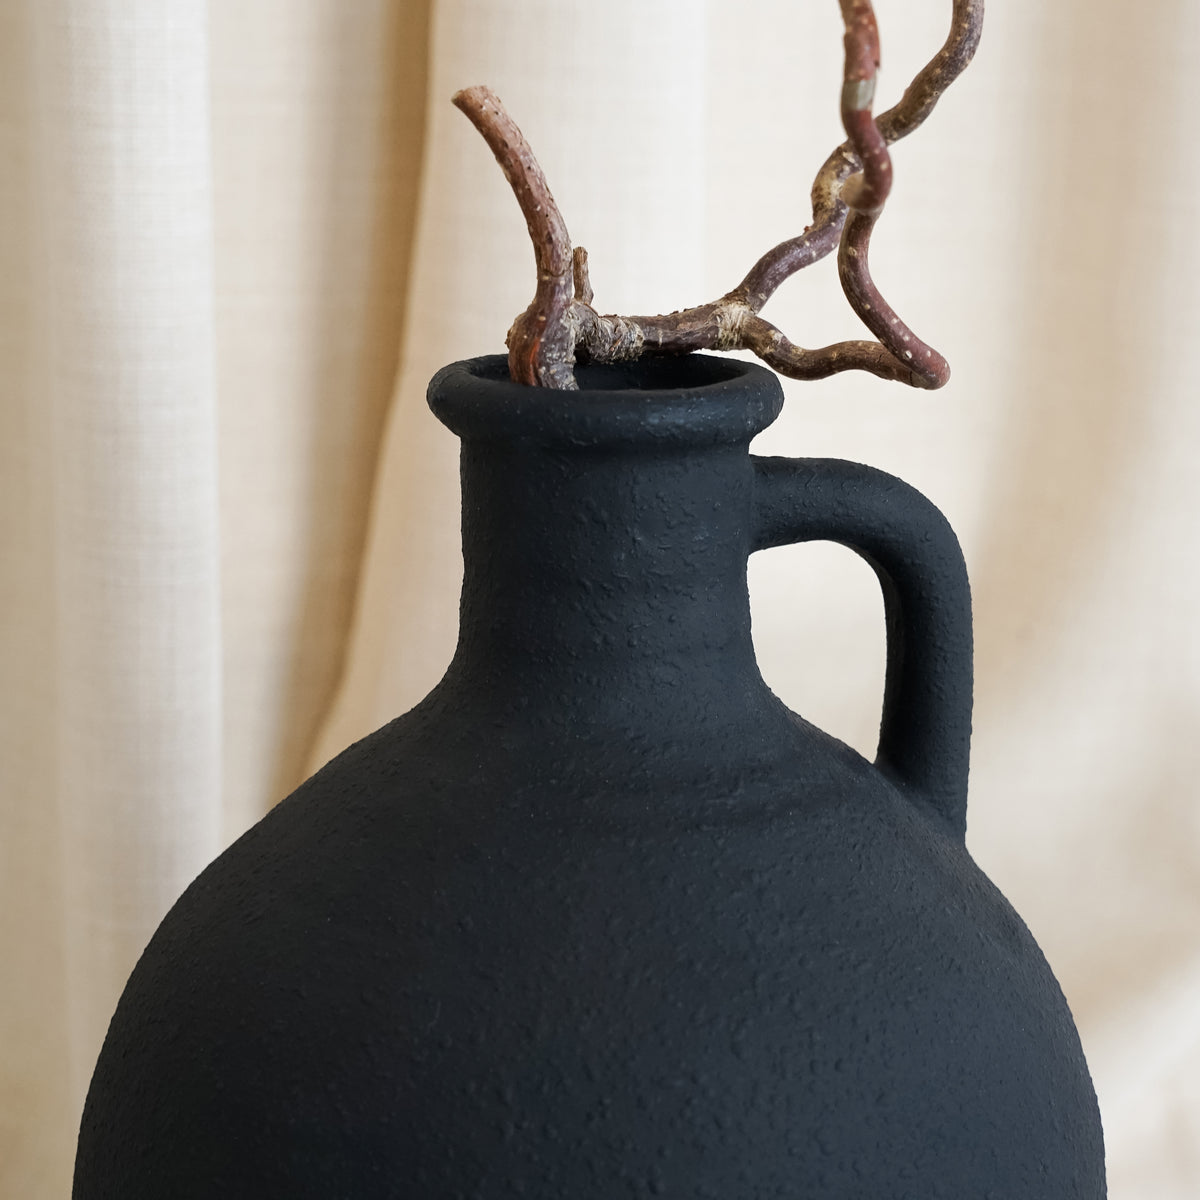 Black Textured Ceramic Large Vase rim